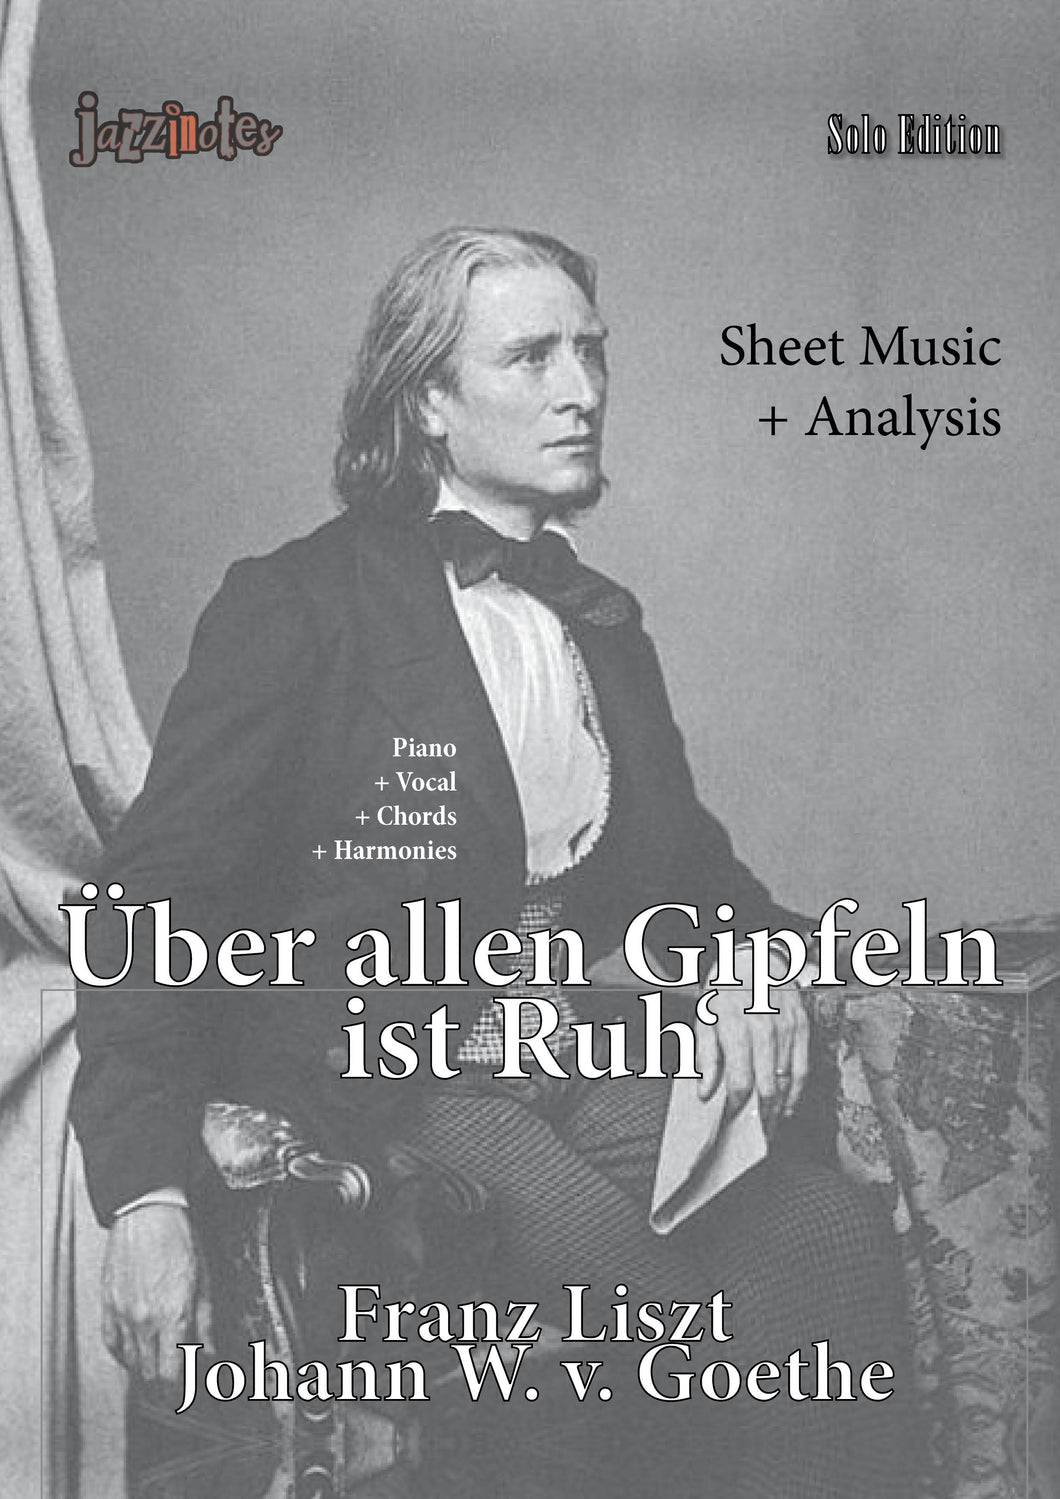 Liszt, Franz: Über allen Gipfeln ist Ruh' - Sheet Music Download and Analysis